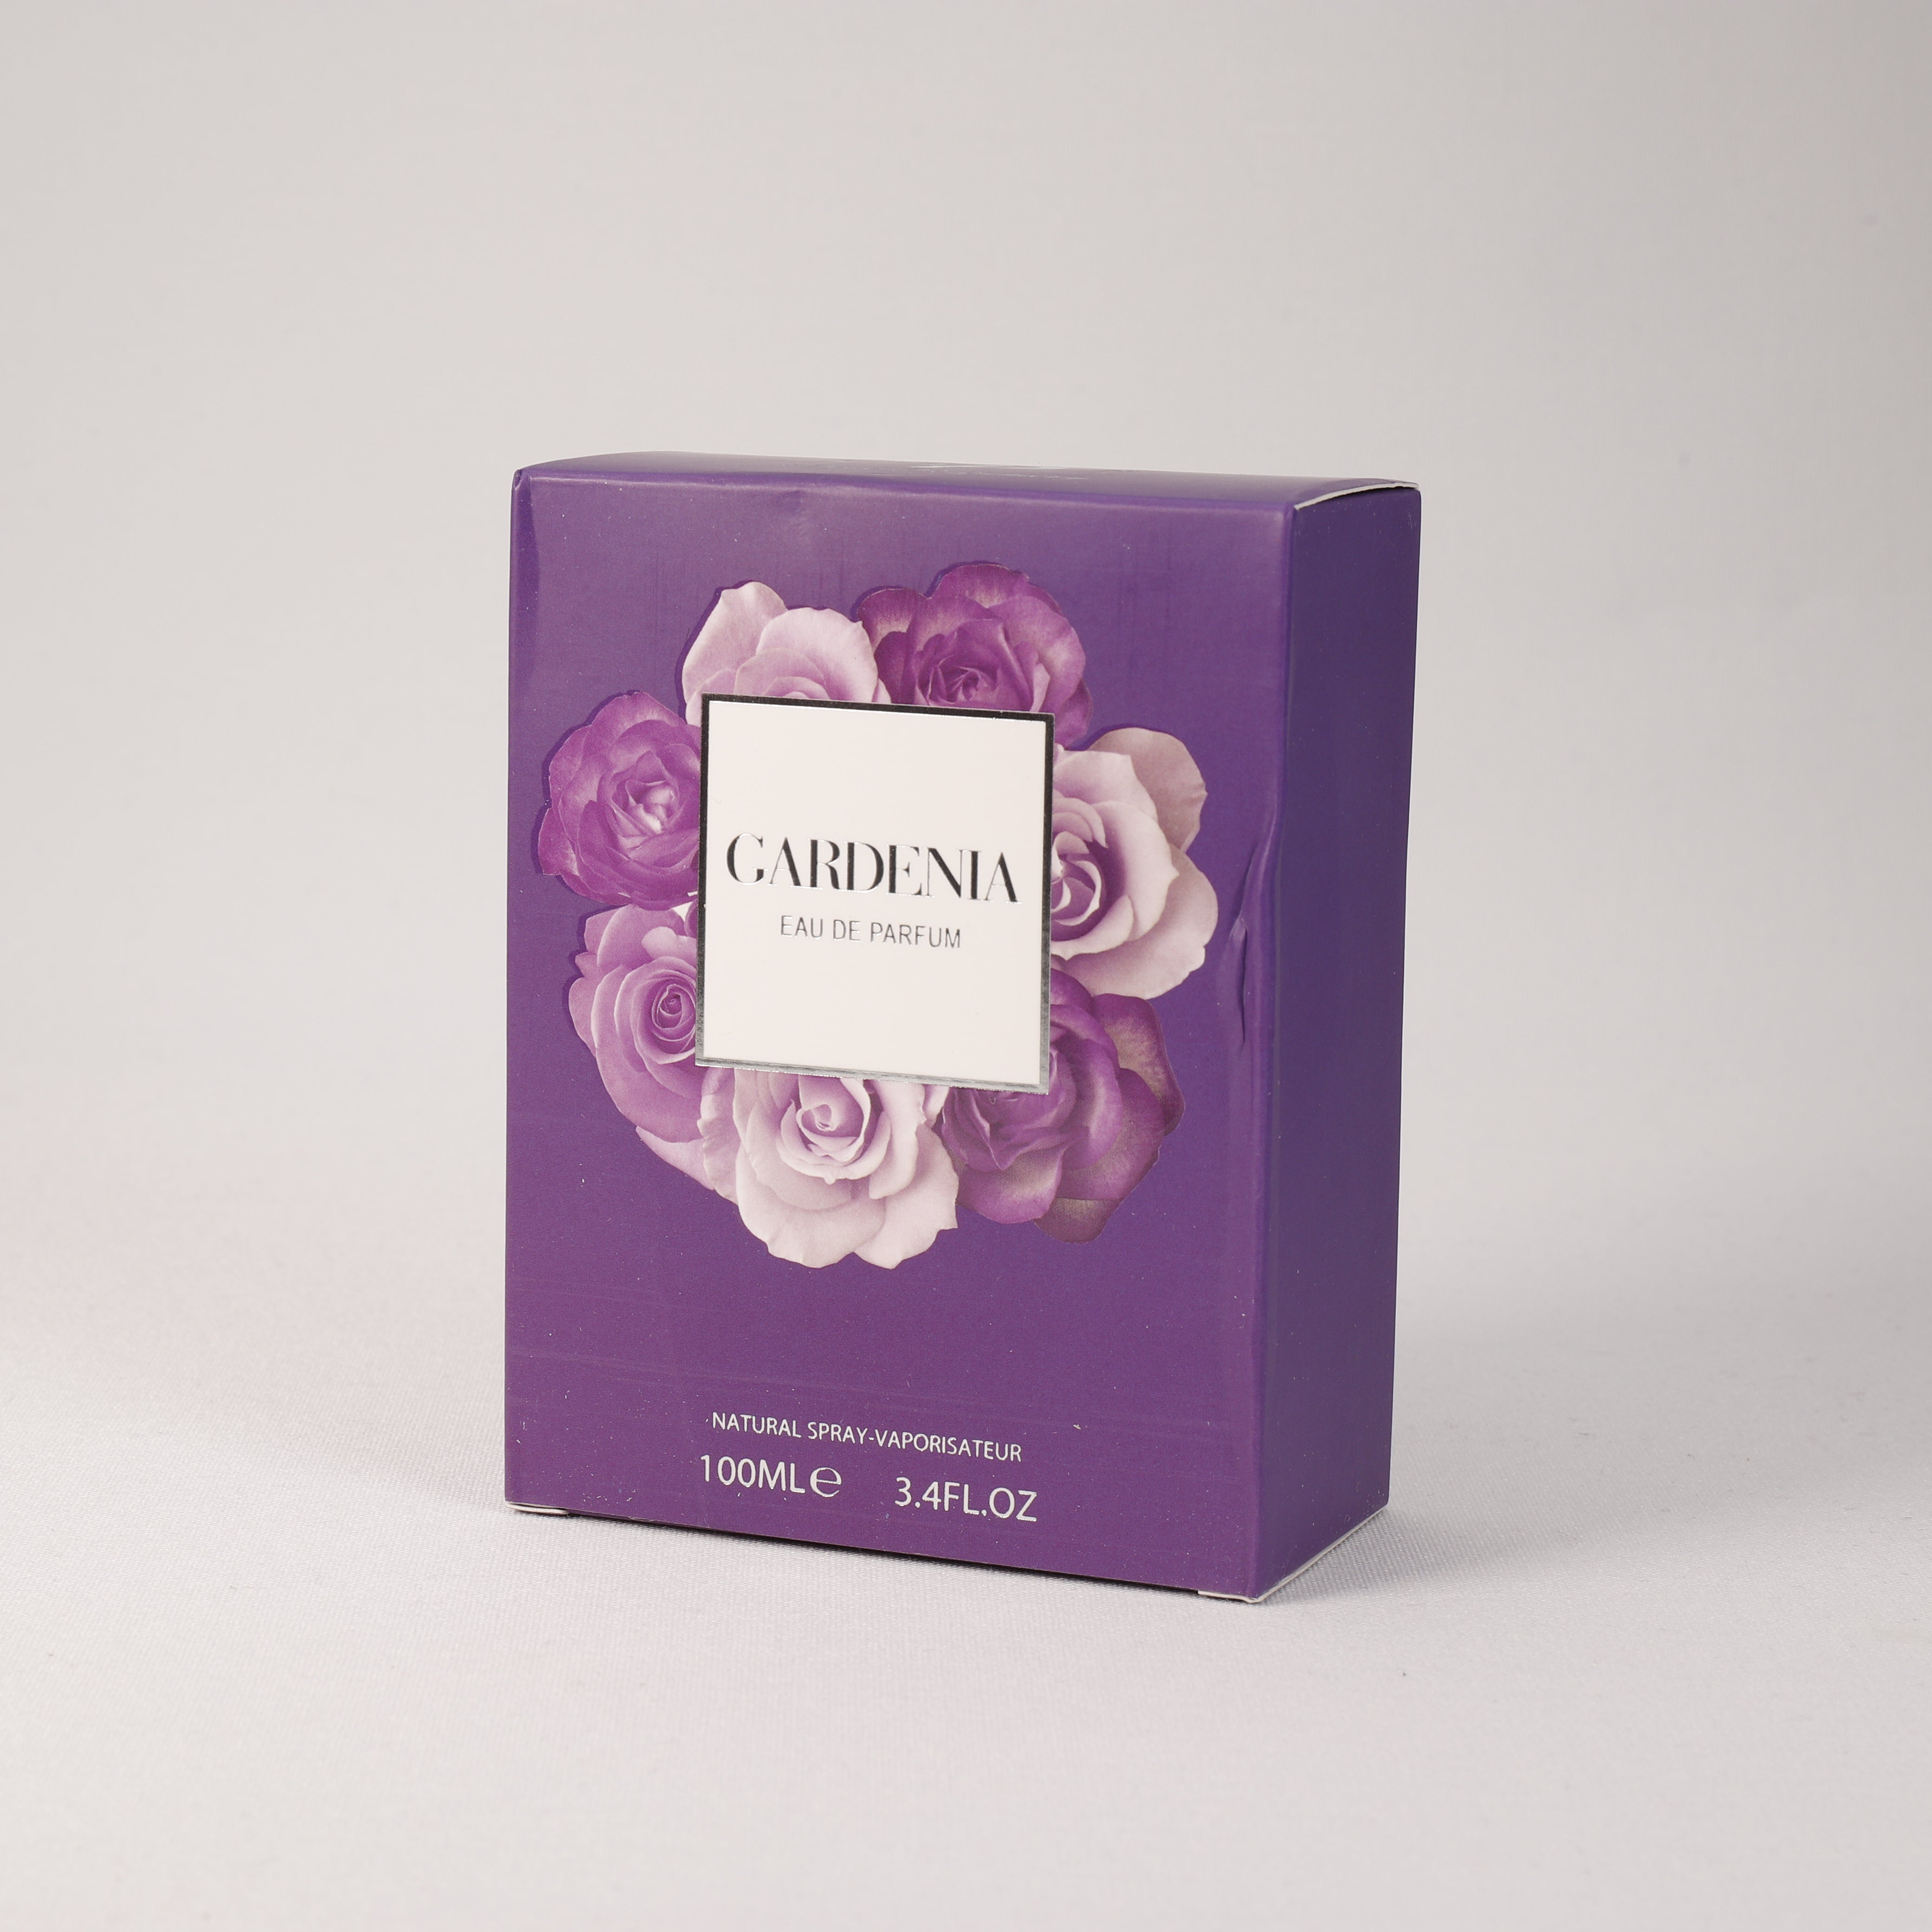 Gardenia für Damen, Vaporizer mit natürlichem Spray, 100 ml, Duft, Parfum, TOP Parfüm, NEU OVP